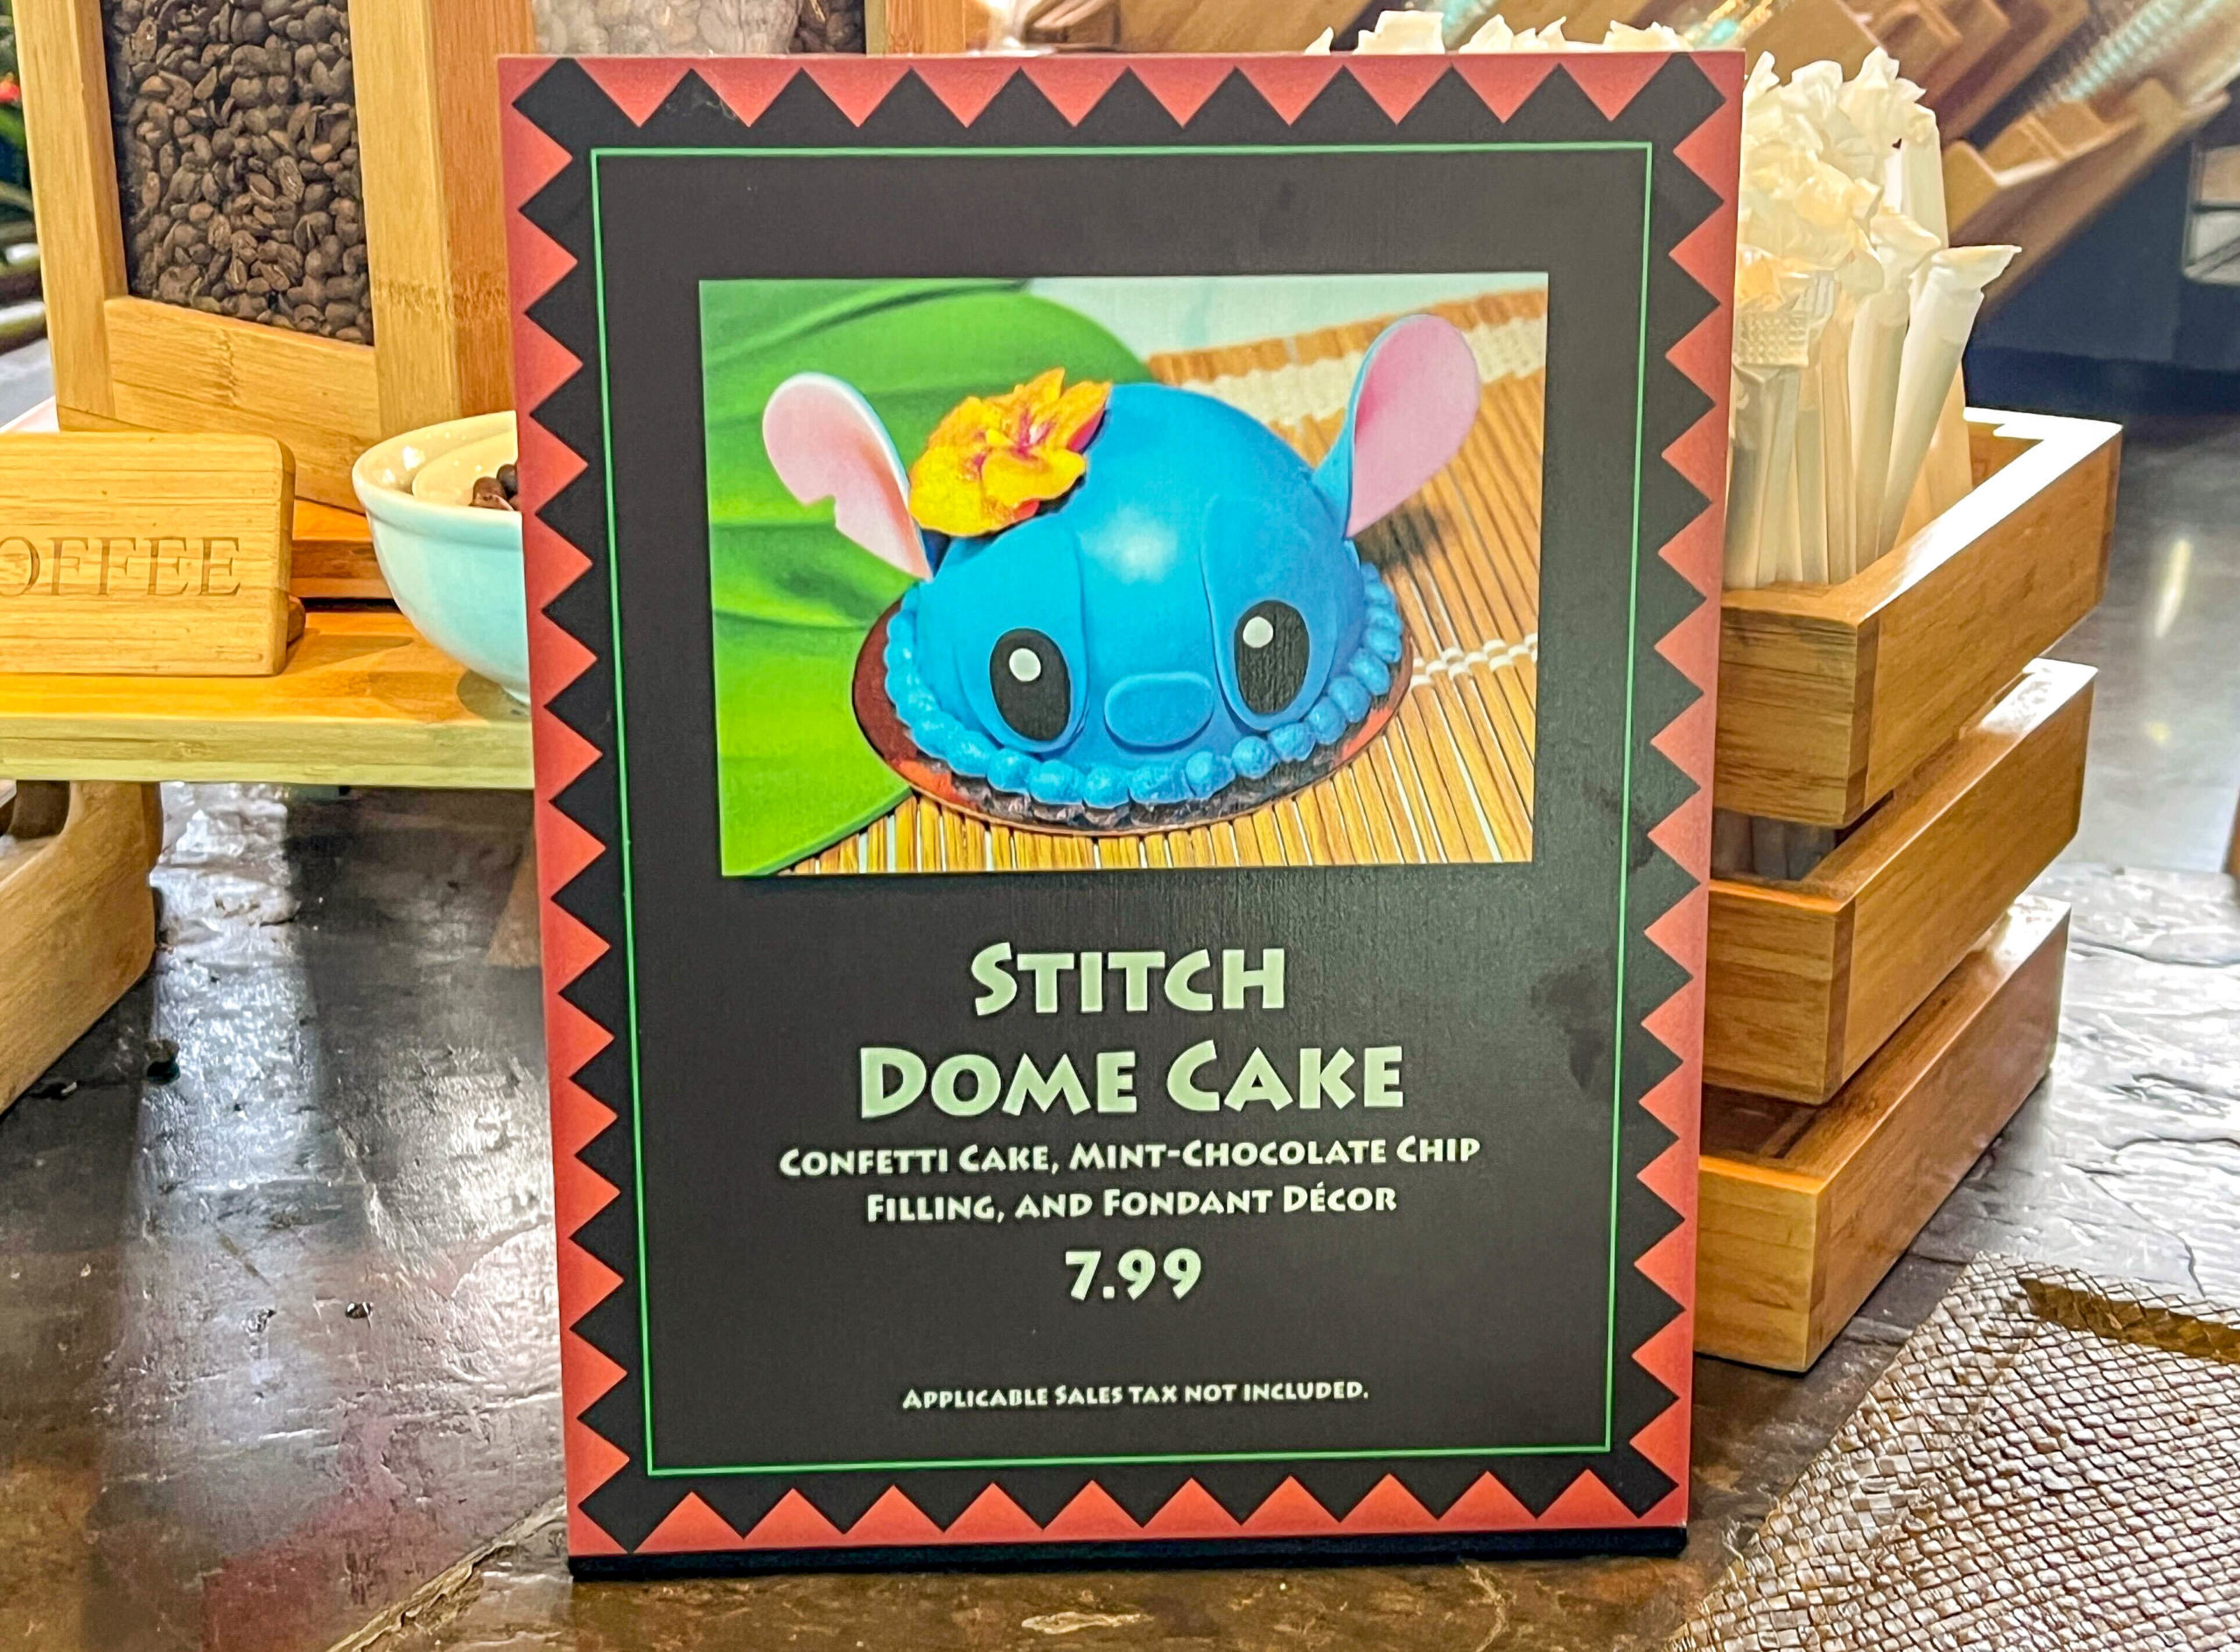 Stitch Dome Cake